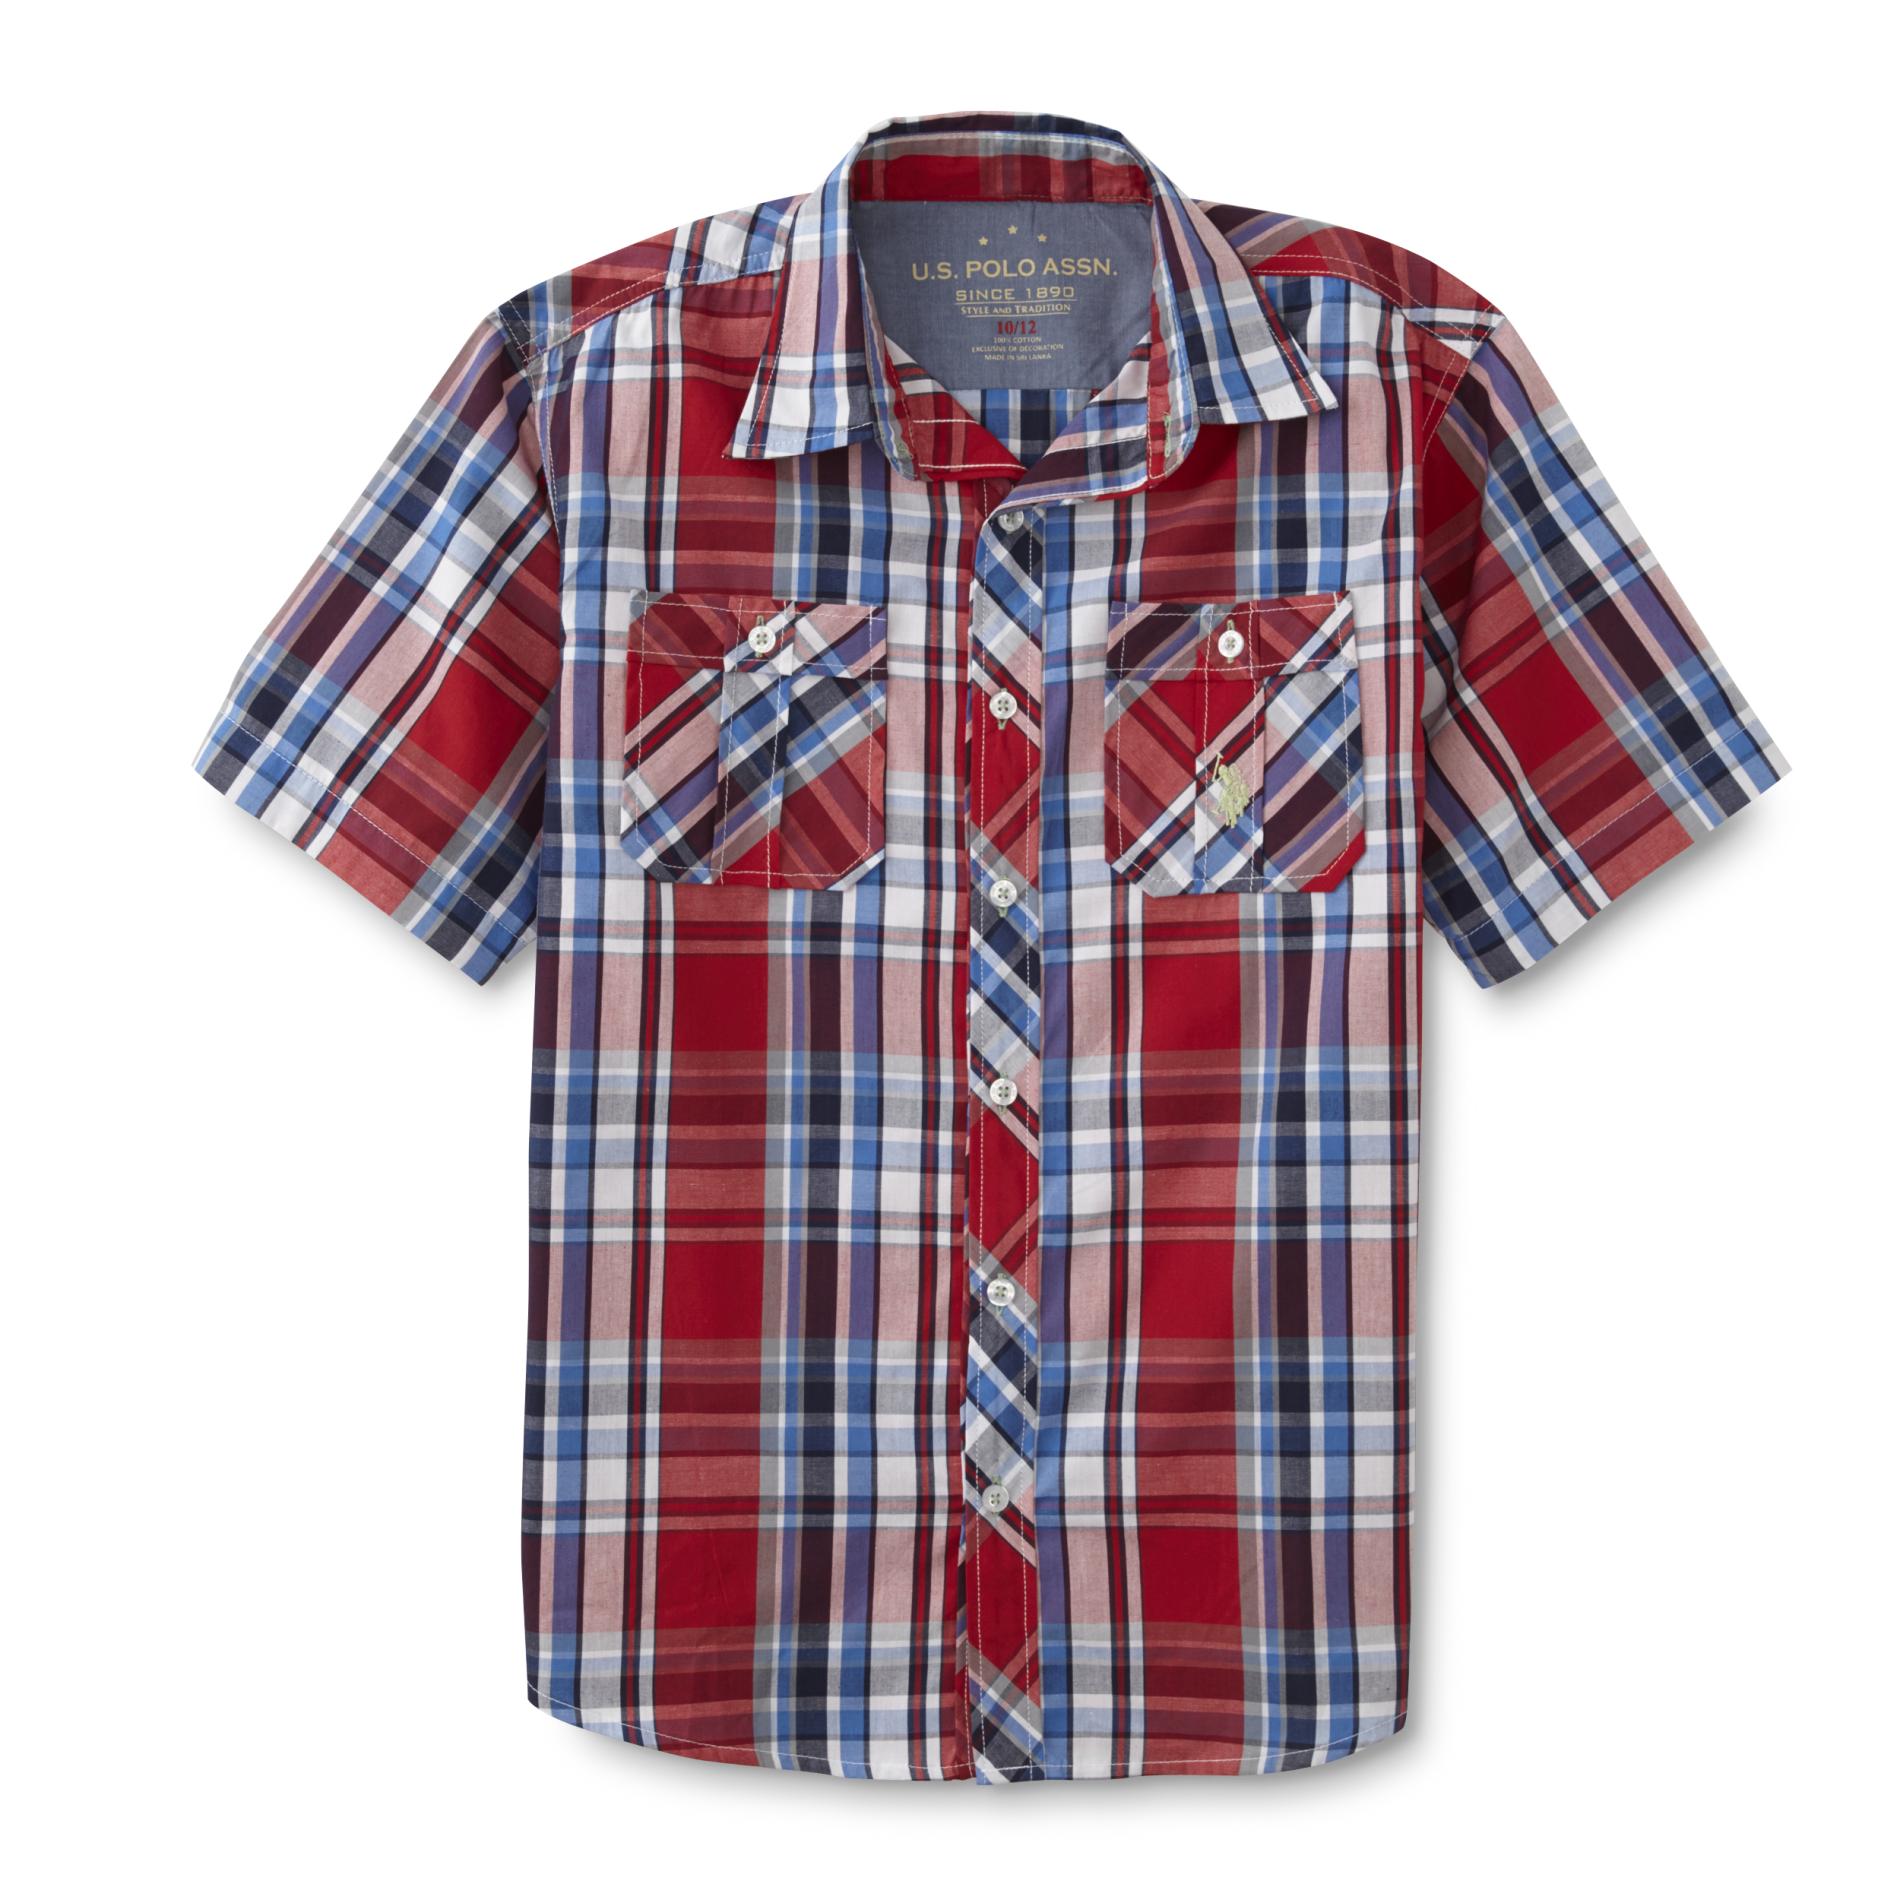 Boy's Short-Sleeve Shirt - Plaid